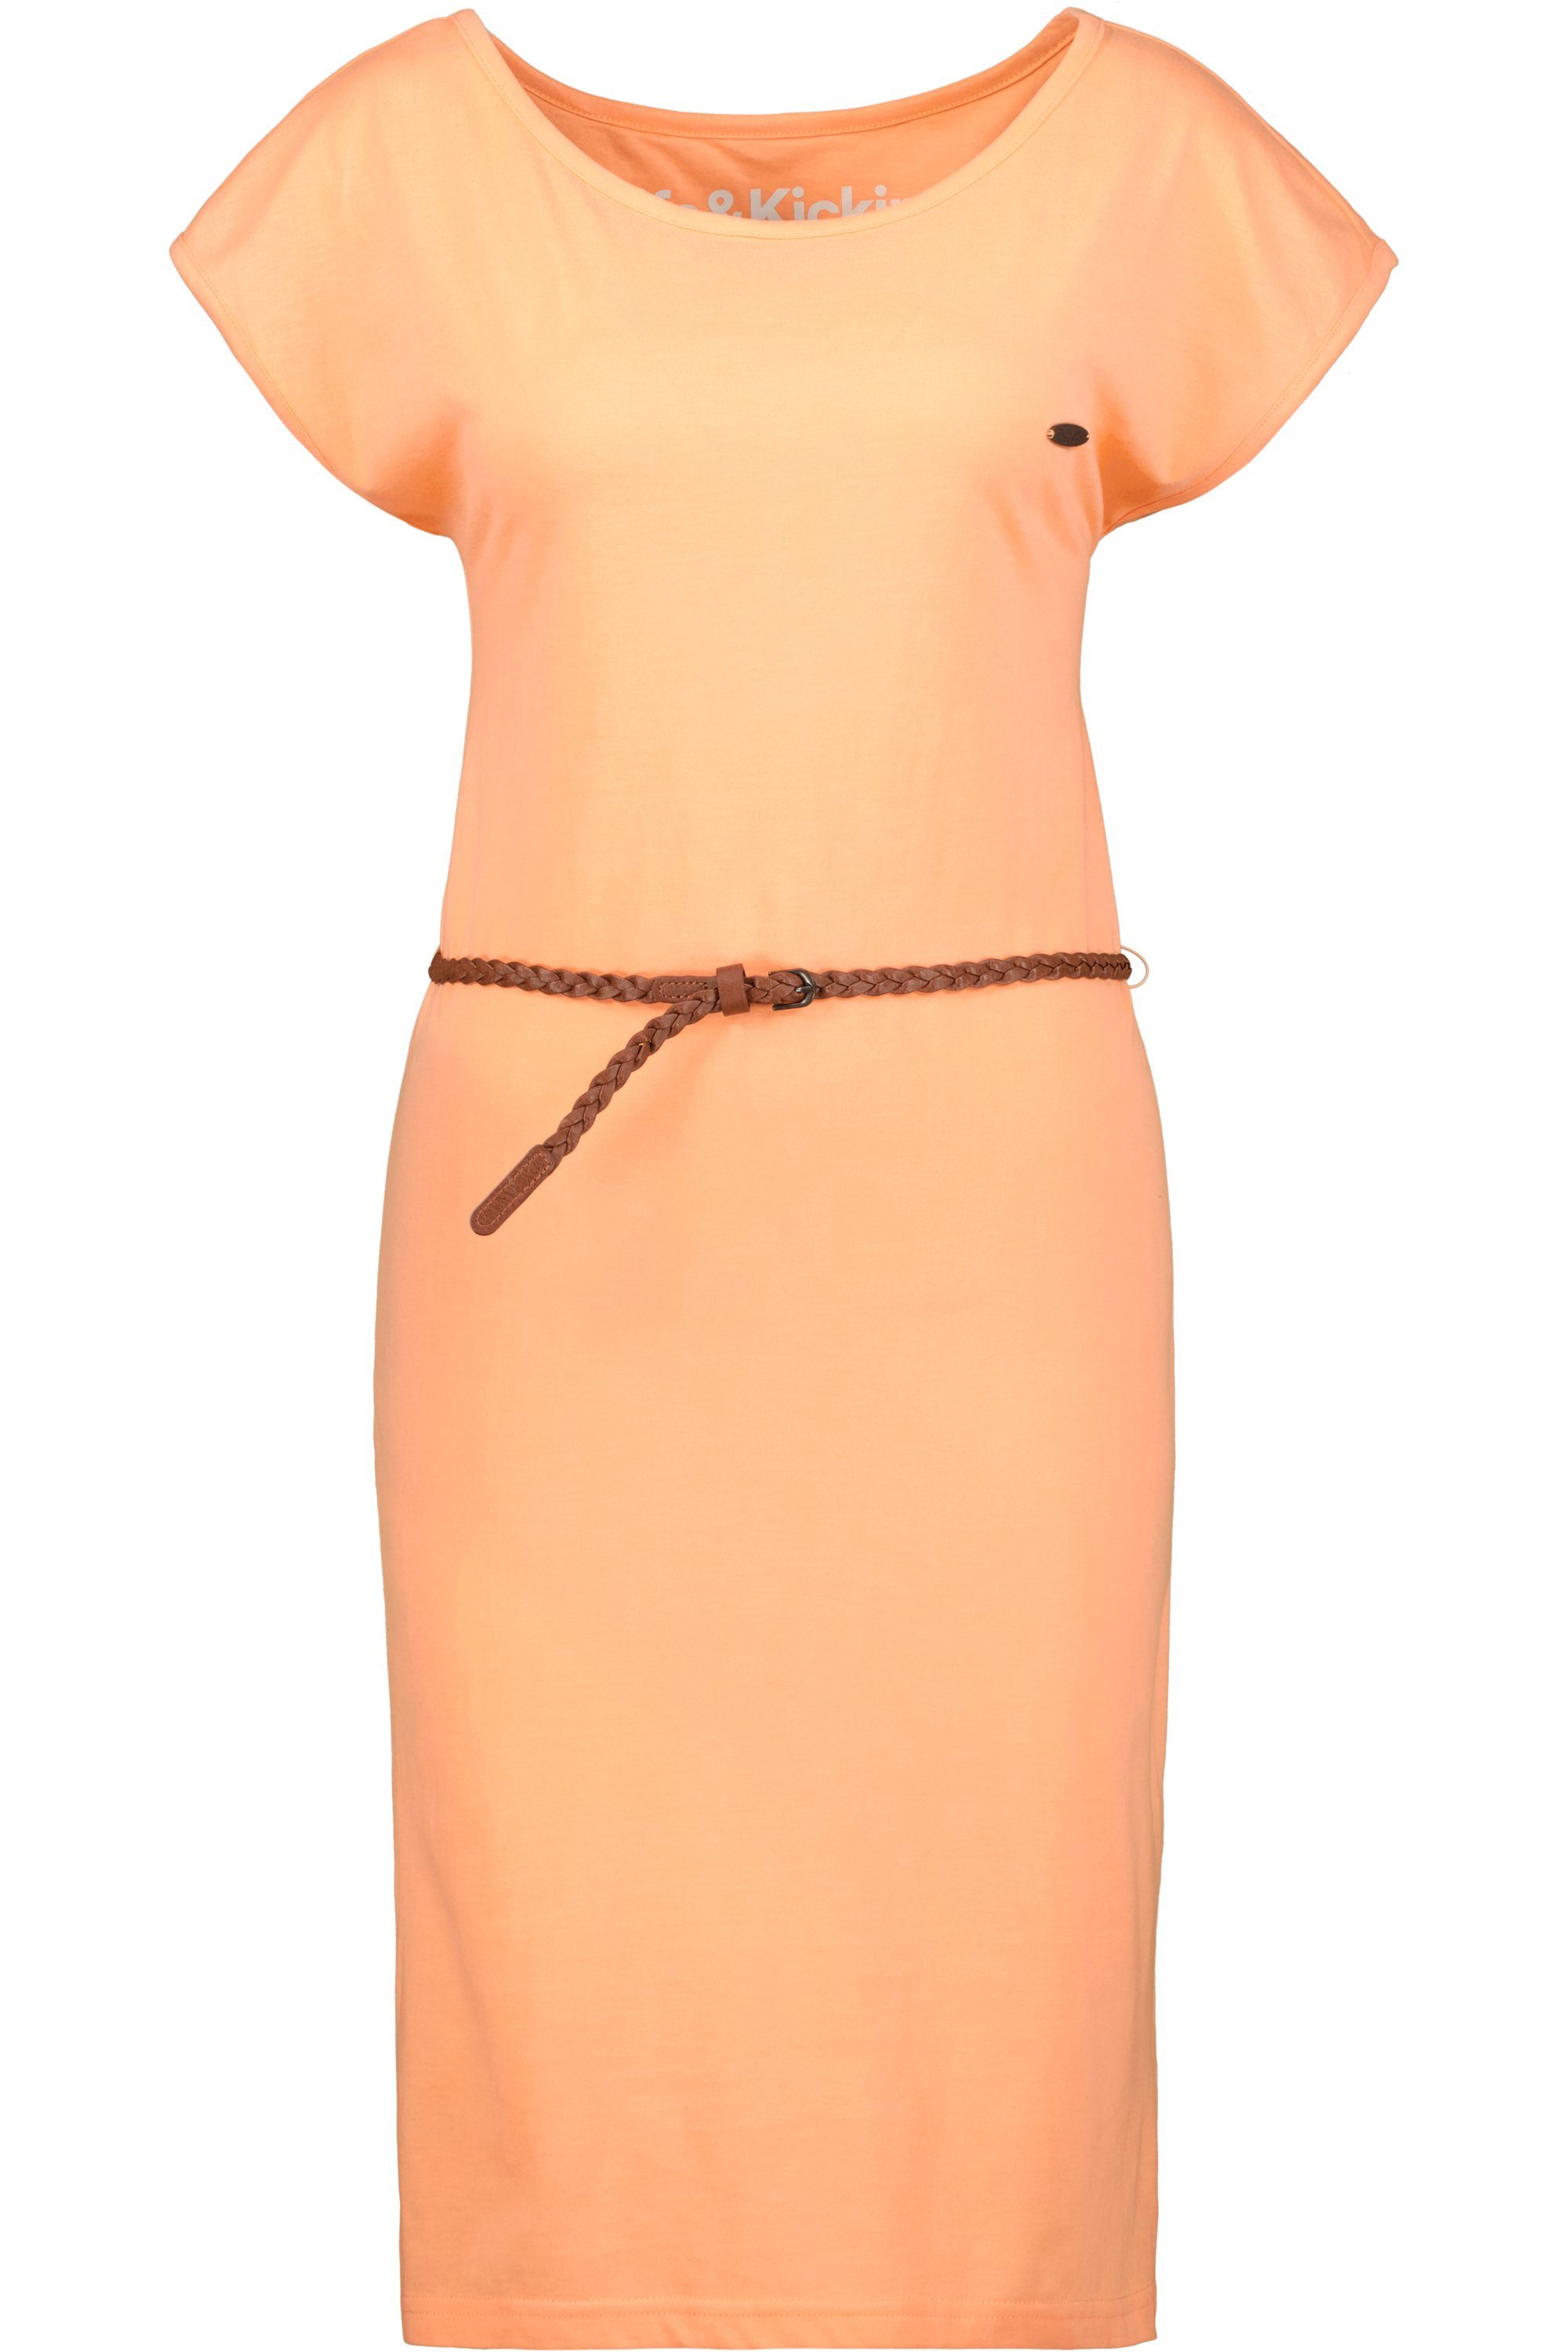 Alife & Kickin Sommerkleid Damen Sommerkleid, tangerine Kleid Shirt Dress melange A ElliAK